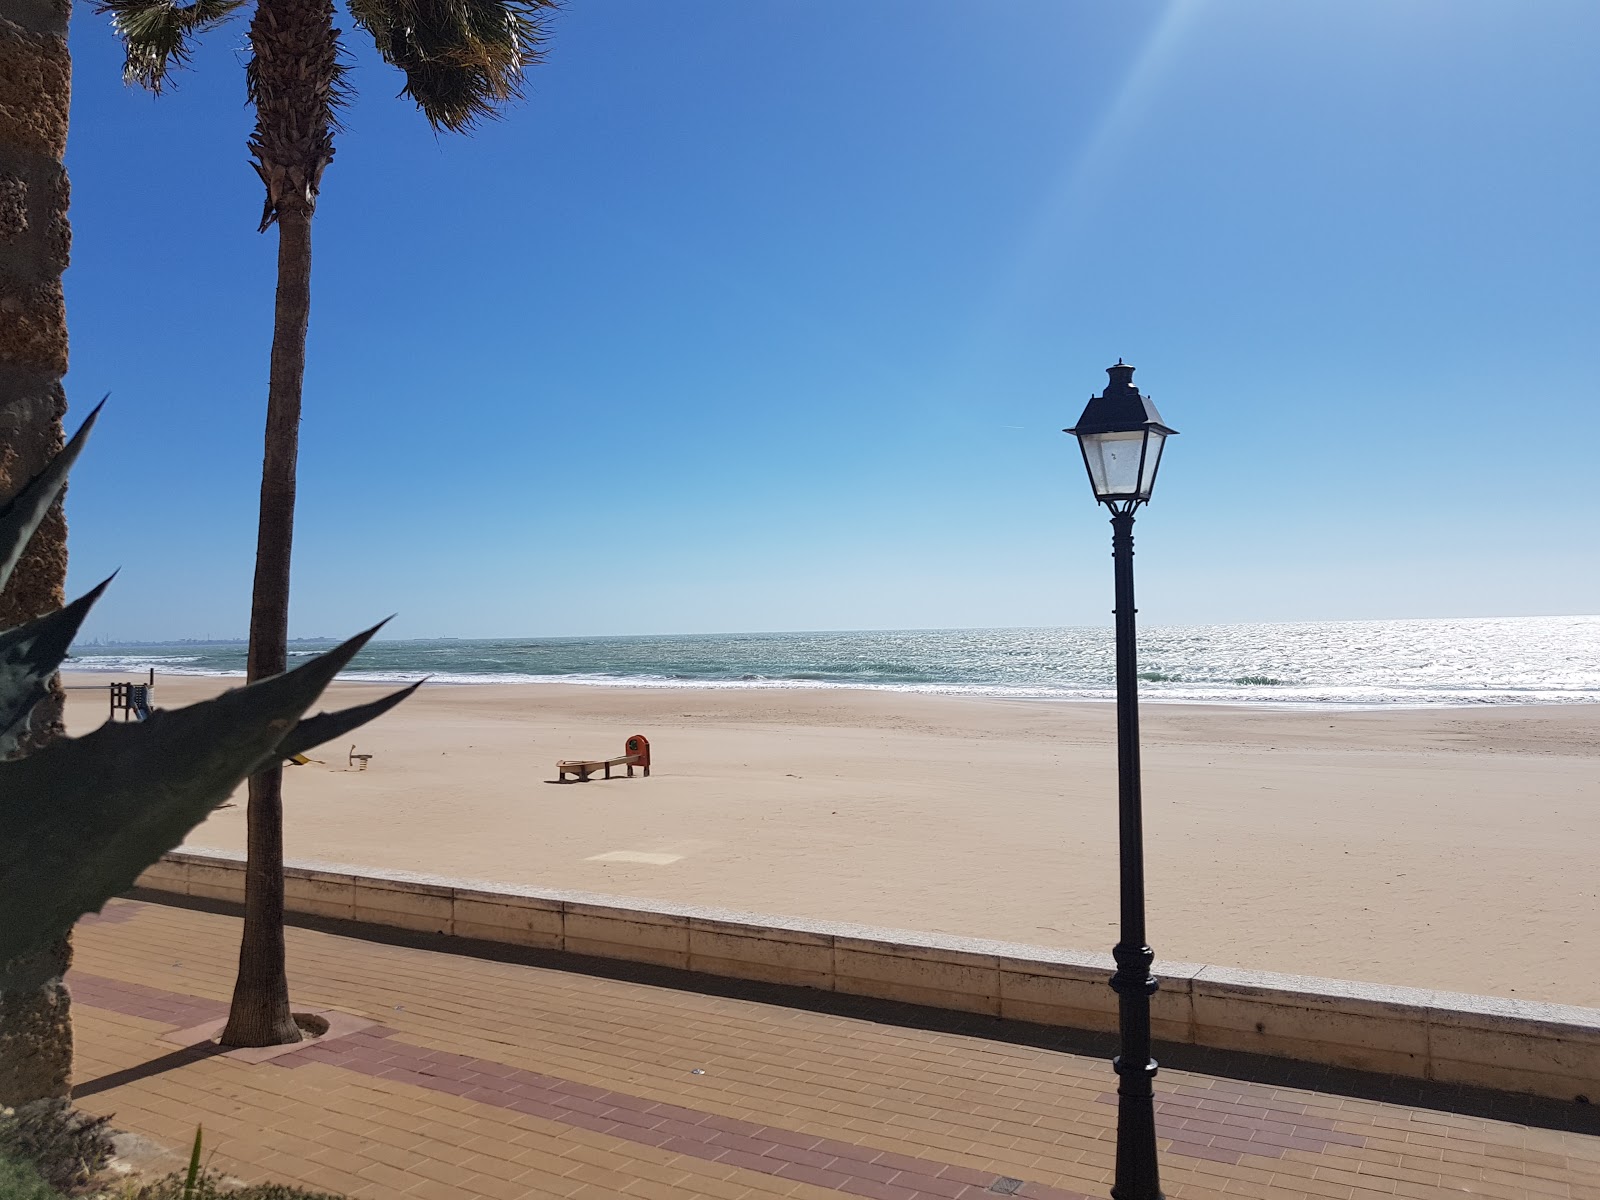 Playa de la Costilla'in fotoğrafı çok temiz temizlik seviyesi ile